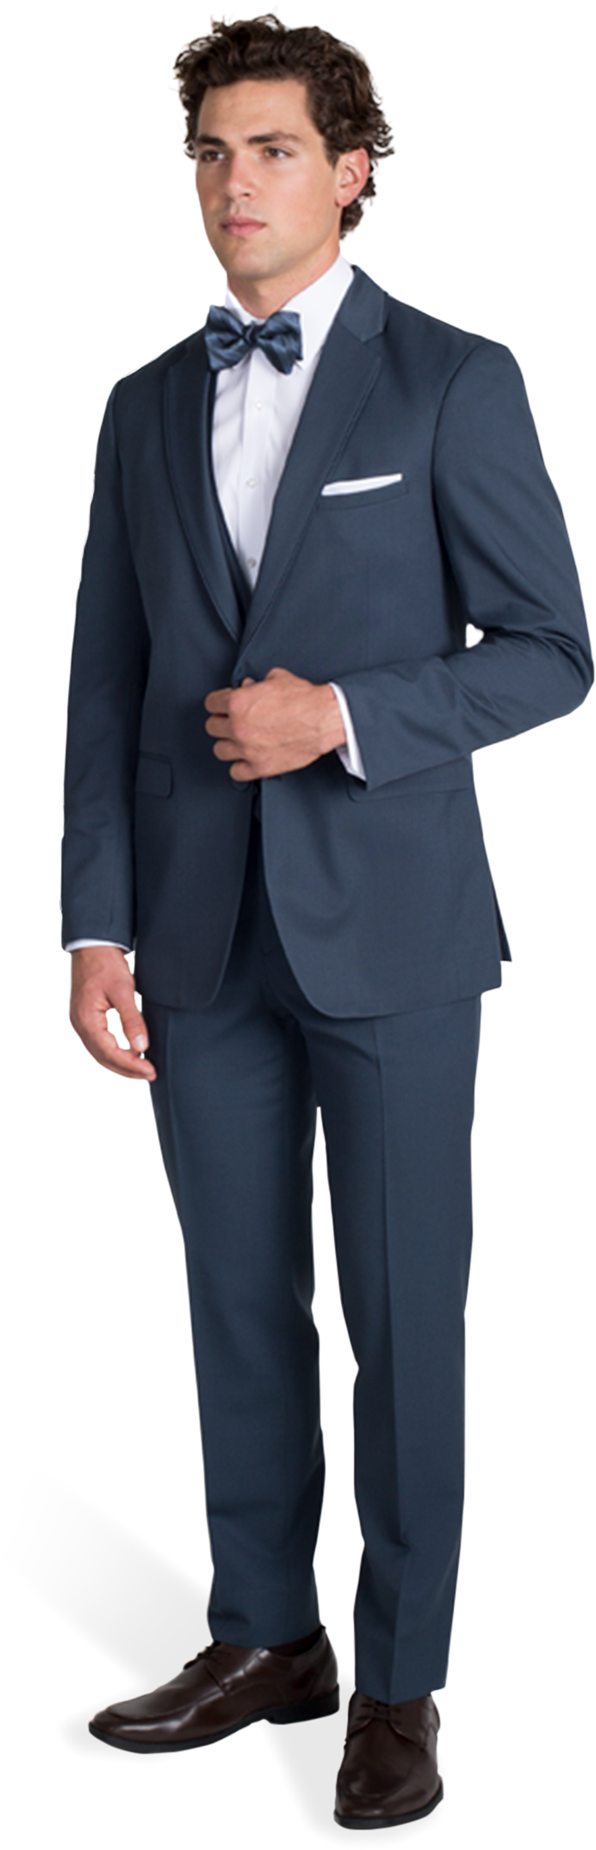 Slate Blue Notch Lapel Suit - Navy Blue Checked Suit (990x1980), Png Download